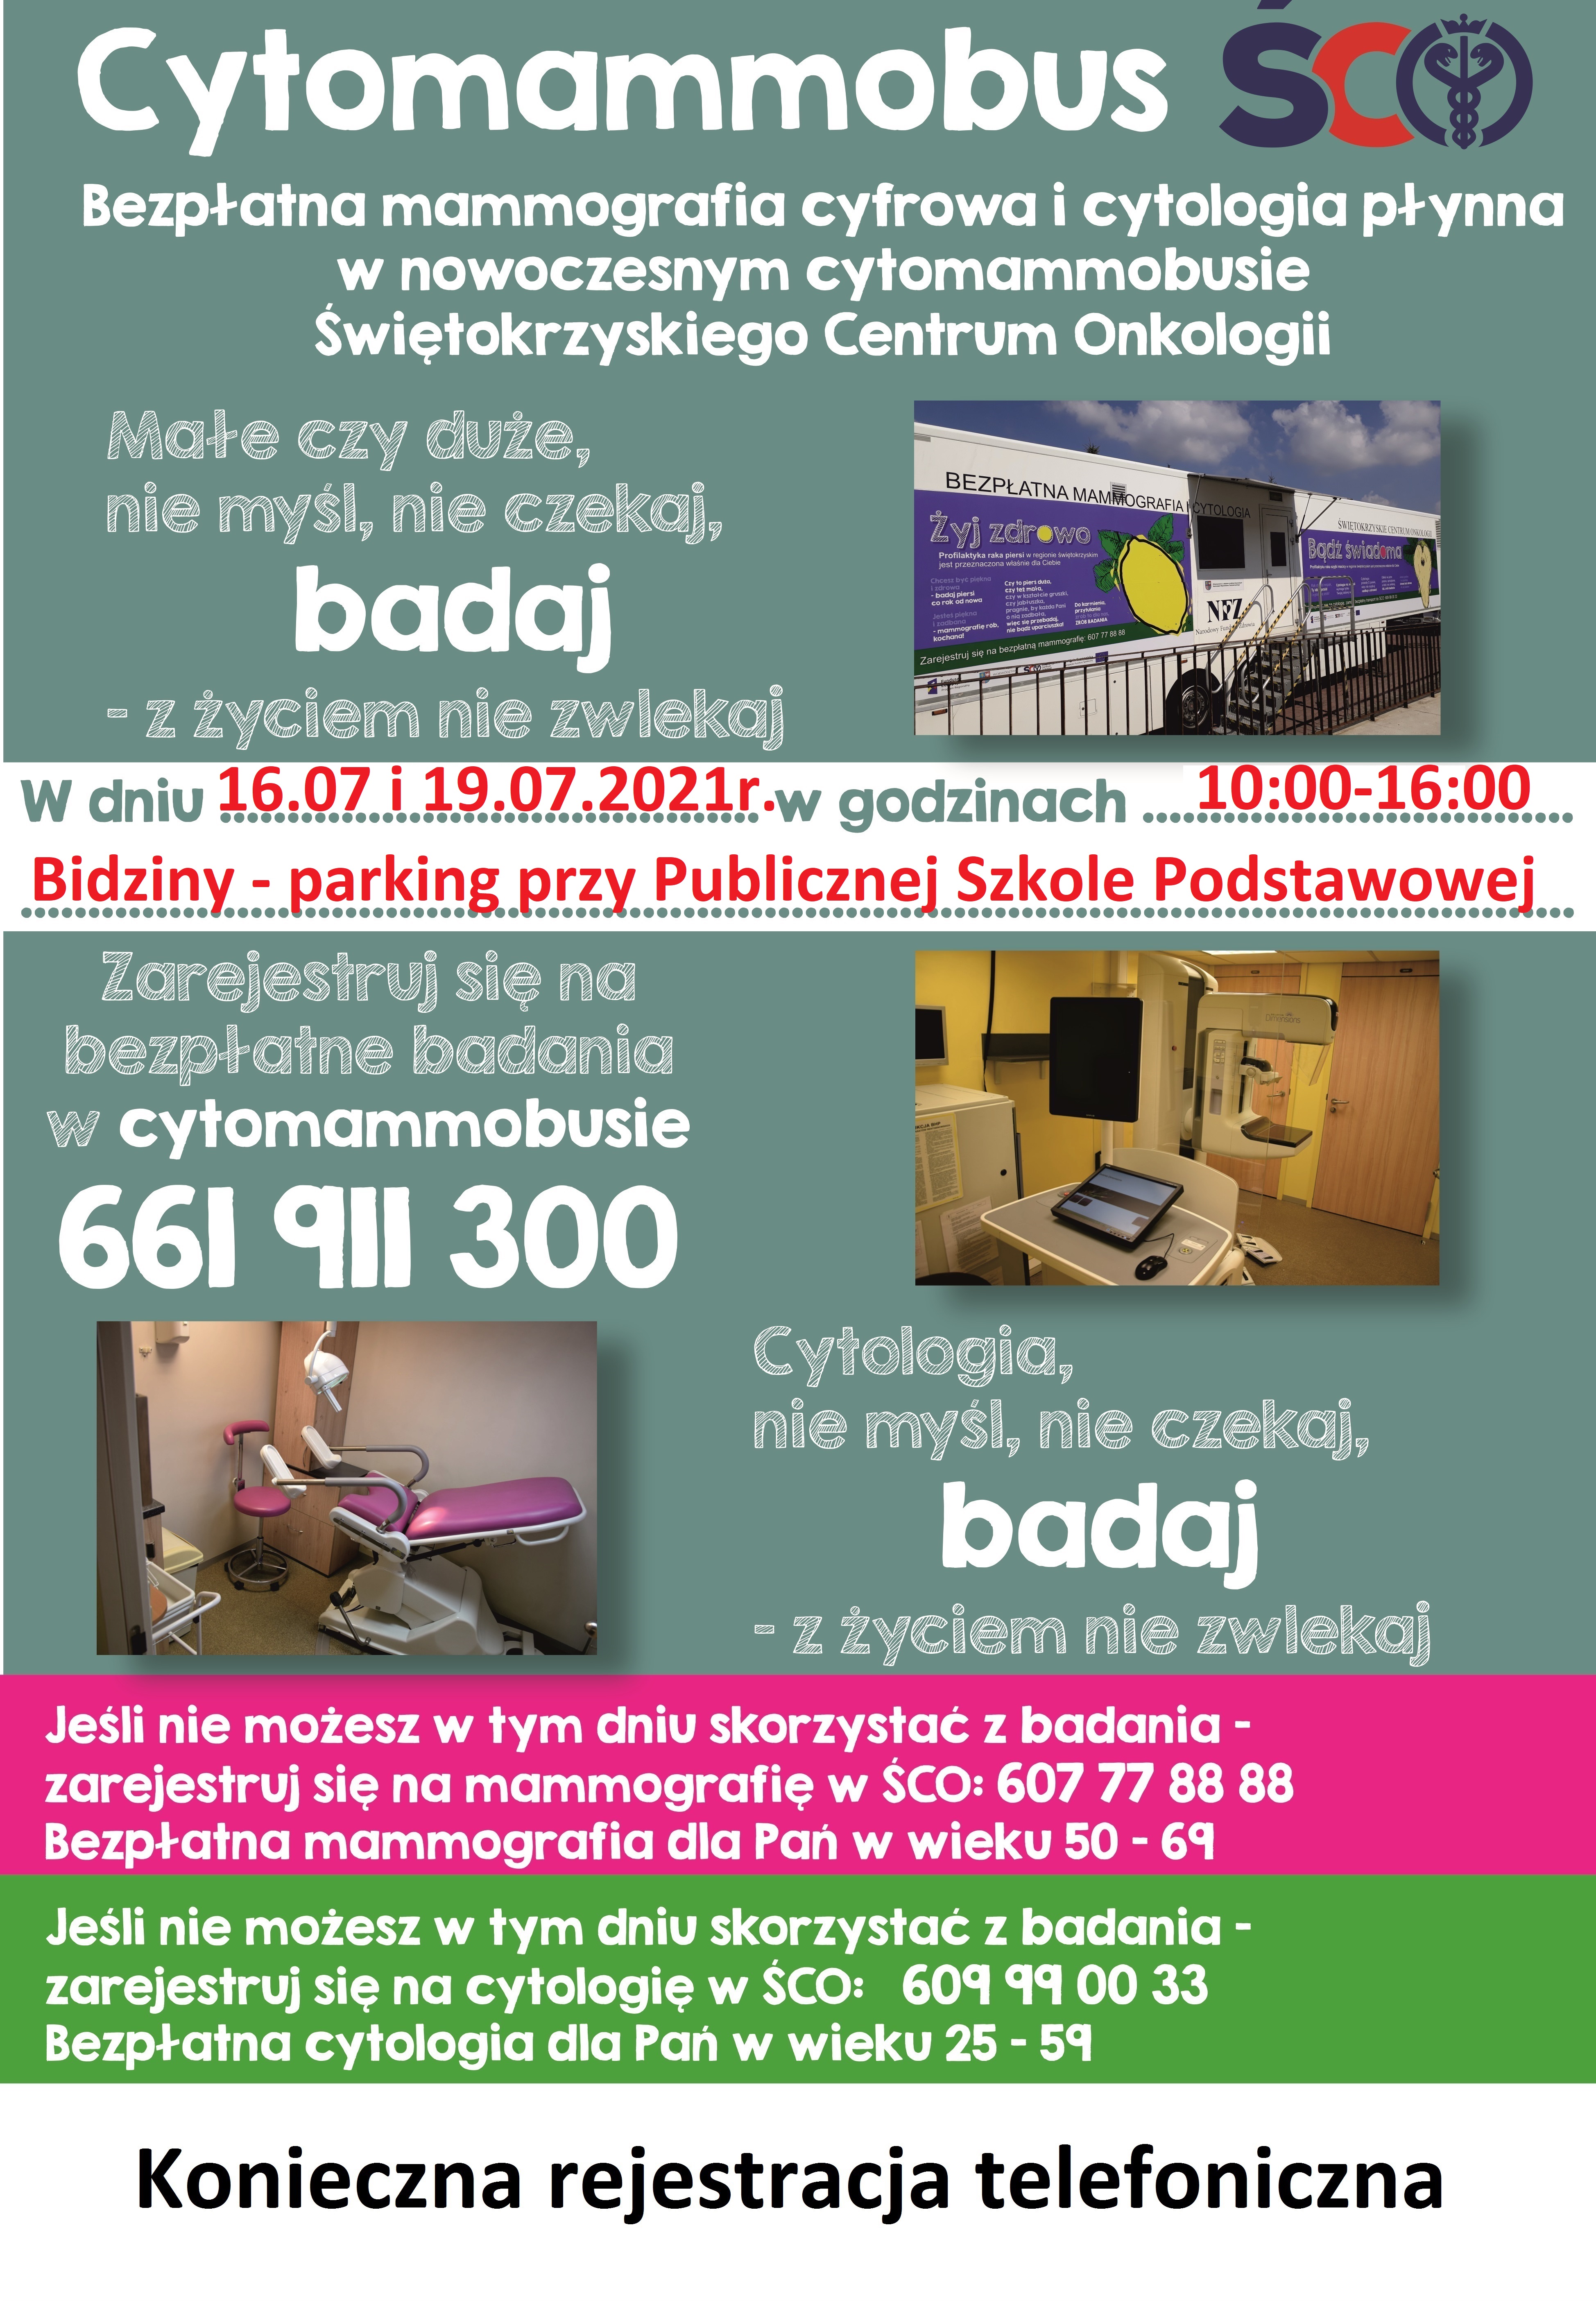 Plakat informujący o bezpłatnej mammografii cyfrowej i cytologii płynnej w cytomammobusie Świętokrzyskiego Centrum Onkologii